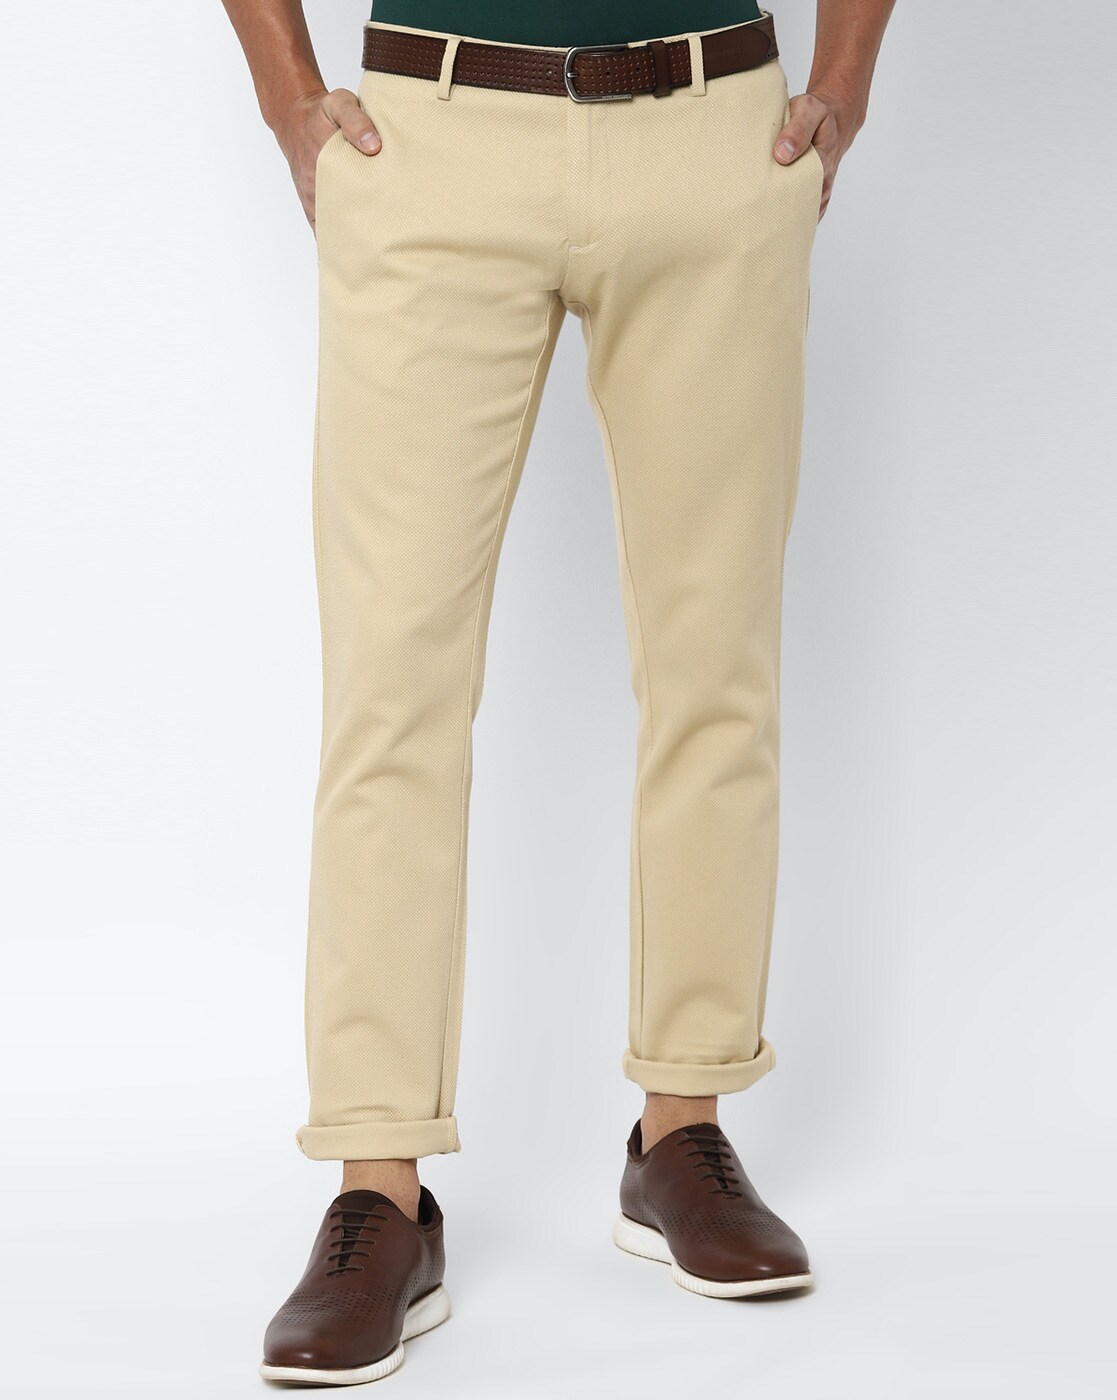 Buy Allen Solly Men's Slim Casual Pants (ASTFQSRFX60072_Beige_Medium) at  Amazon.in